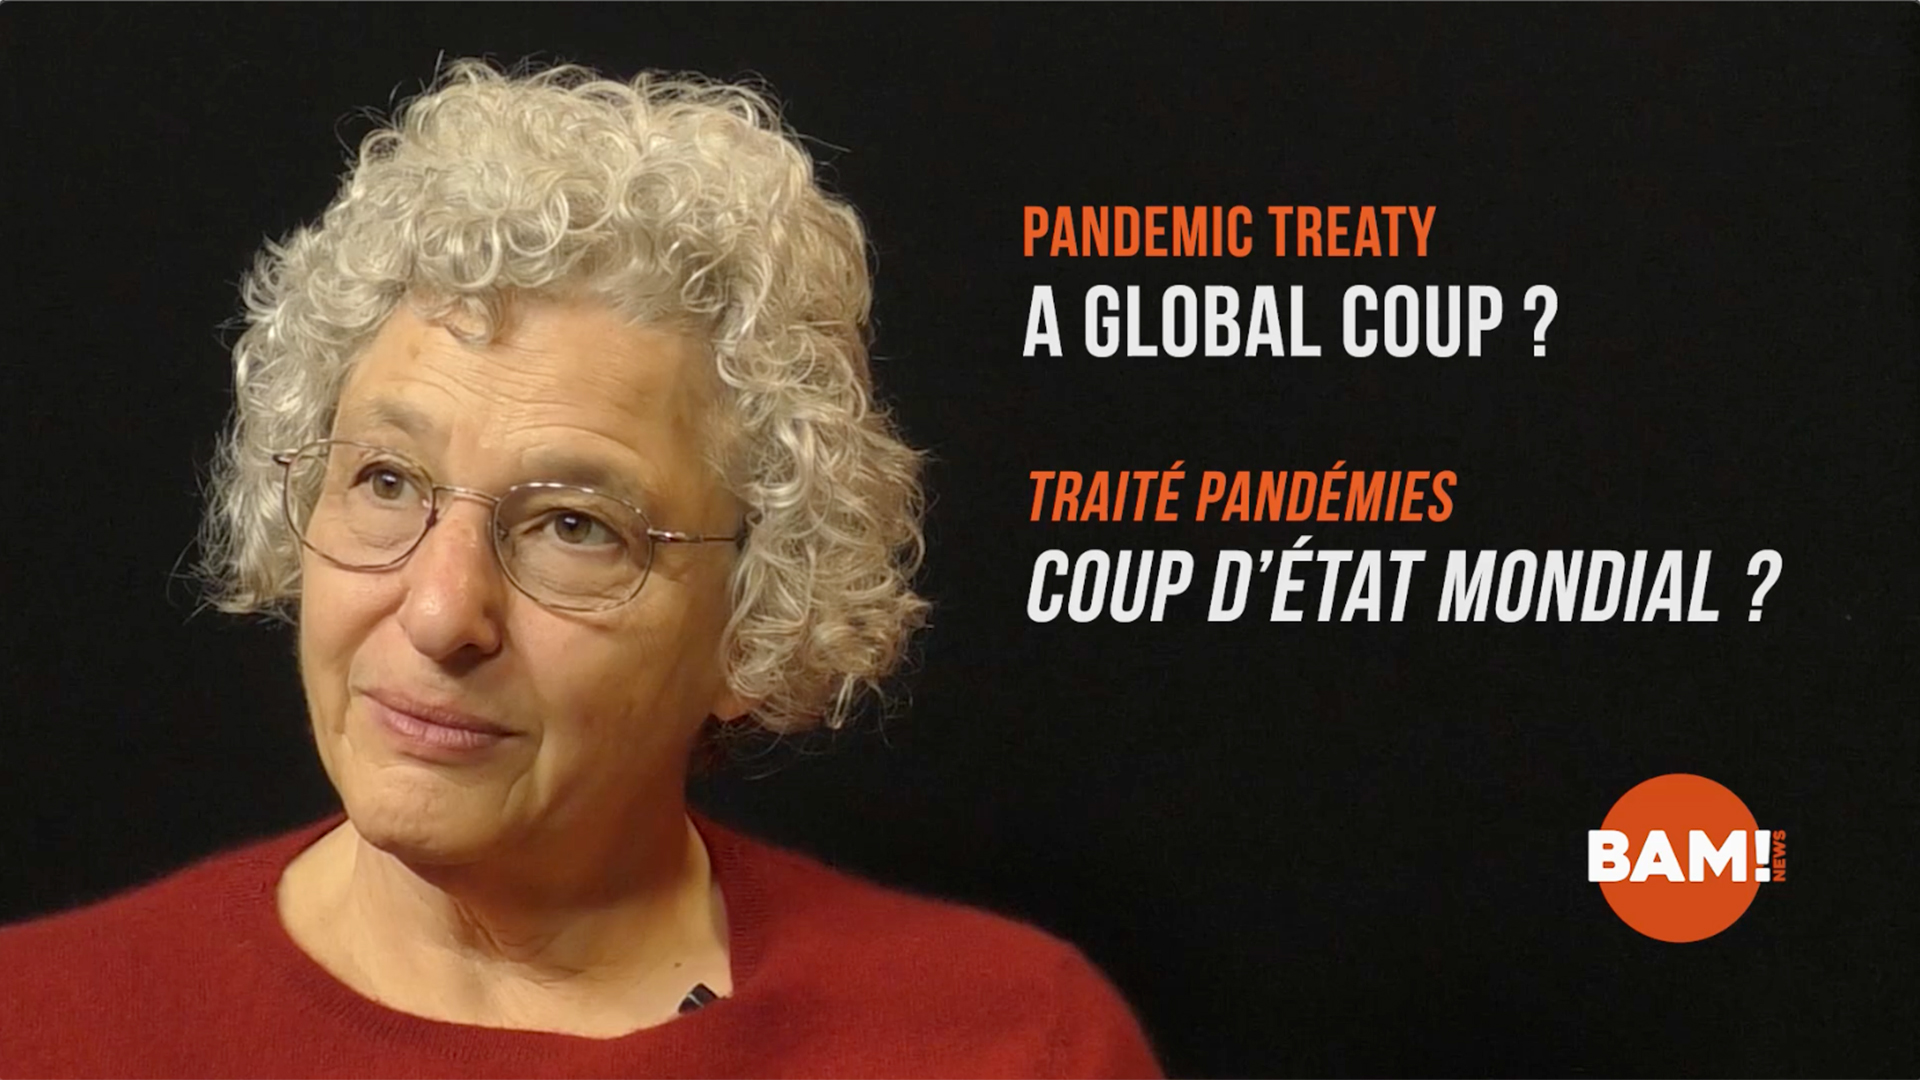 Traité Pandémies de l'OMS : UN COUP D’ÉTAT MONDIAL ?